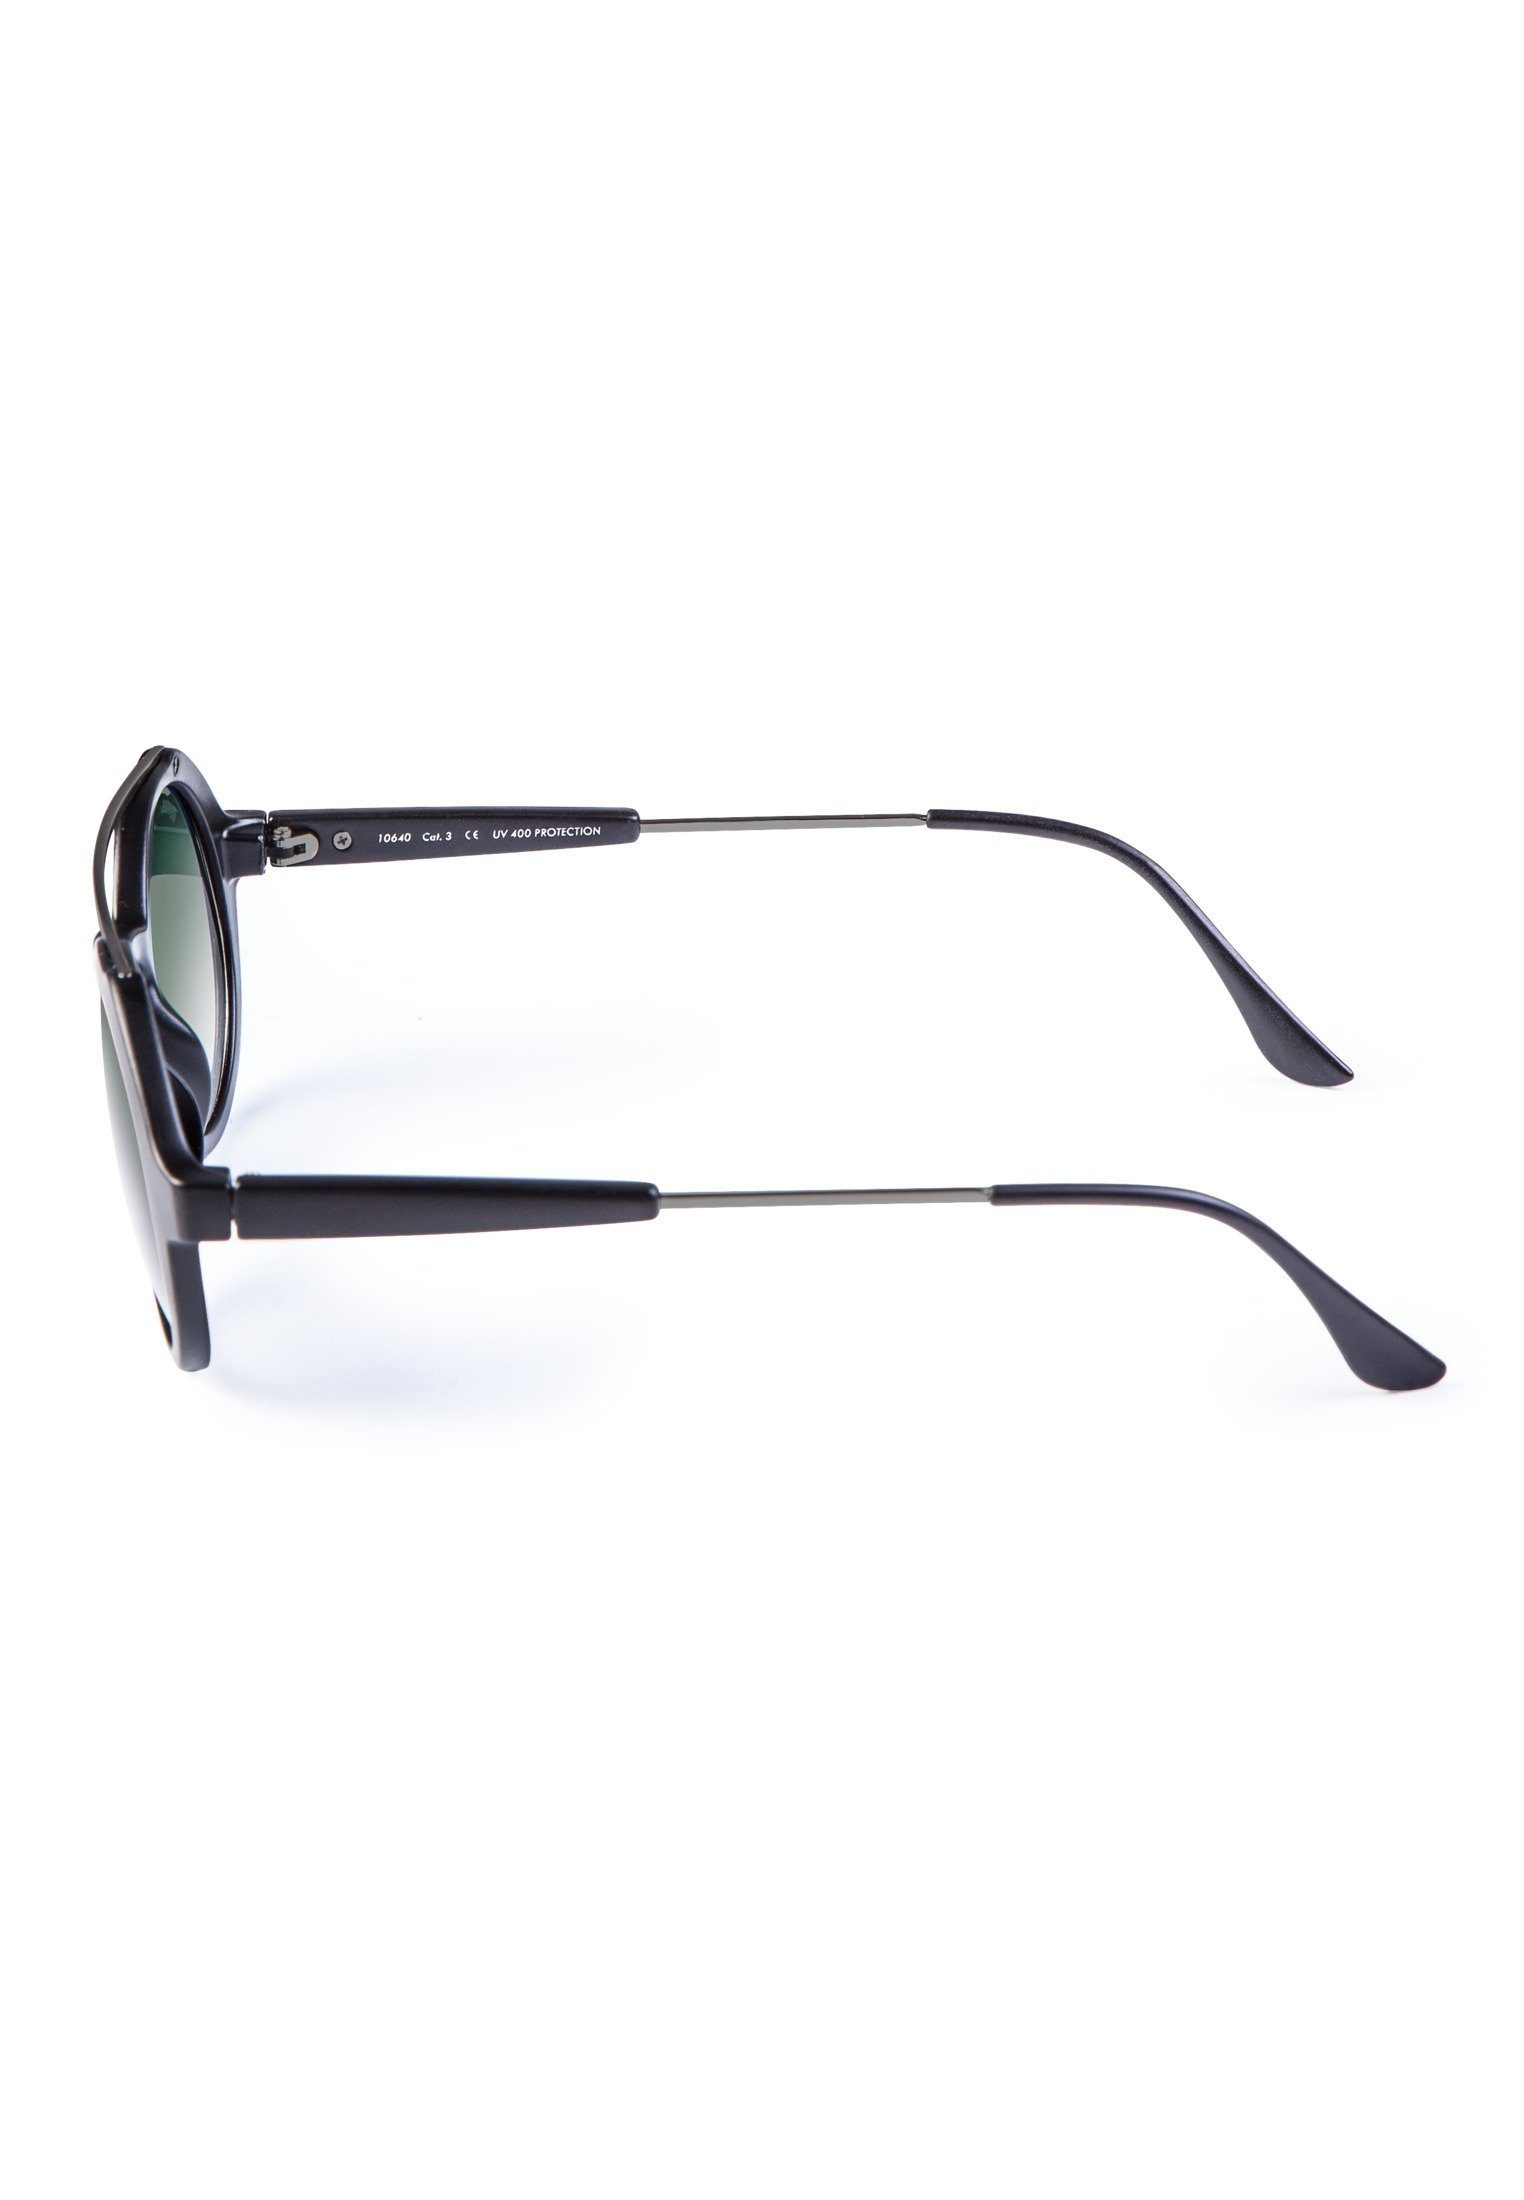 MSTRDS Sonnenbrille Accessoires Sunglasses Retro blk/grn Space